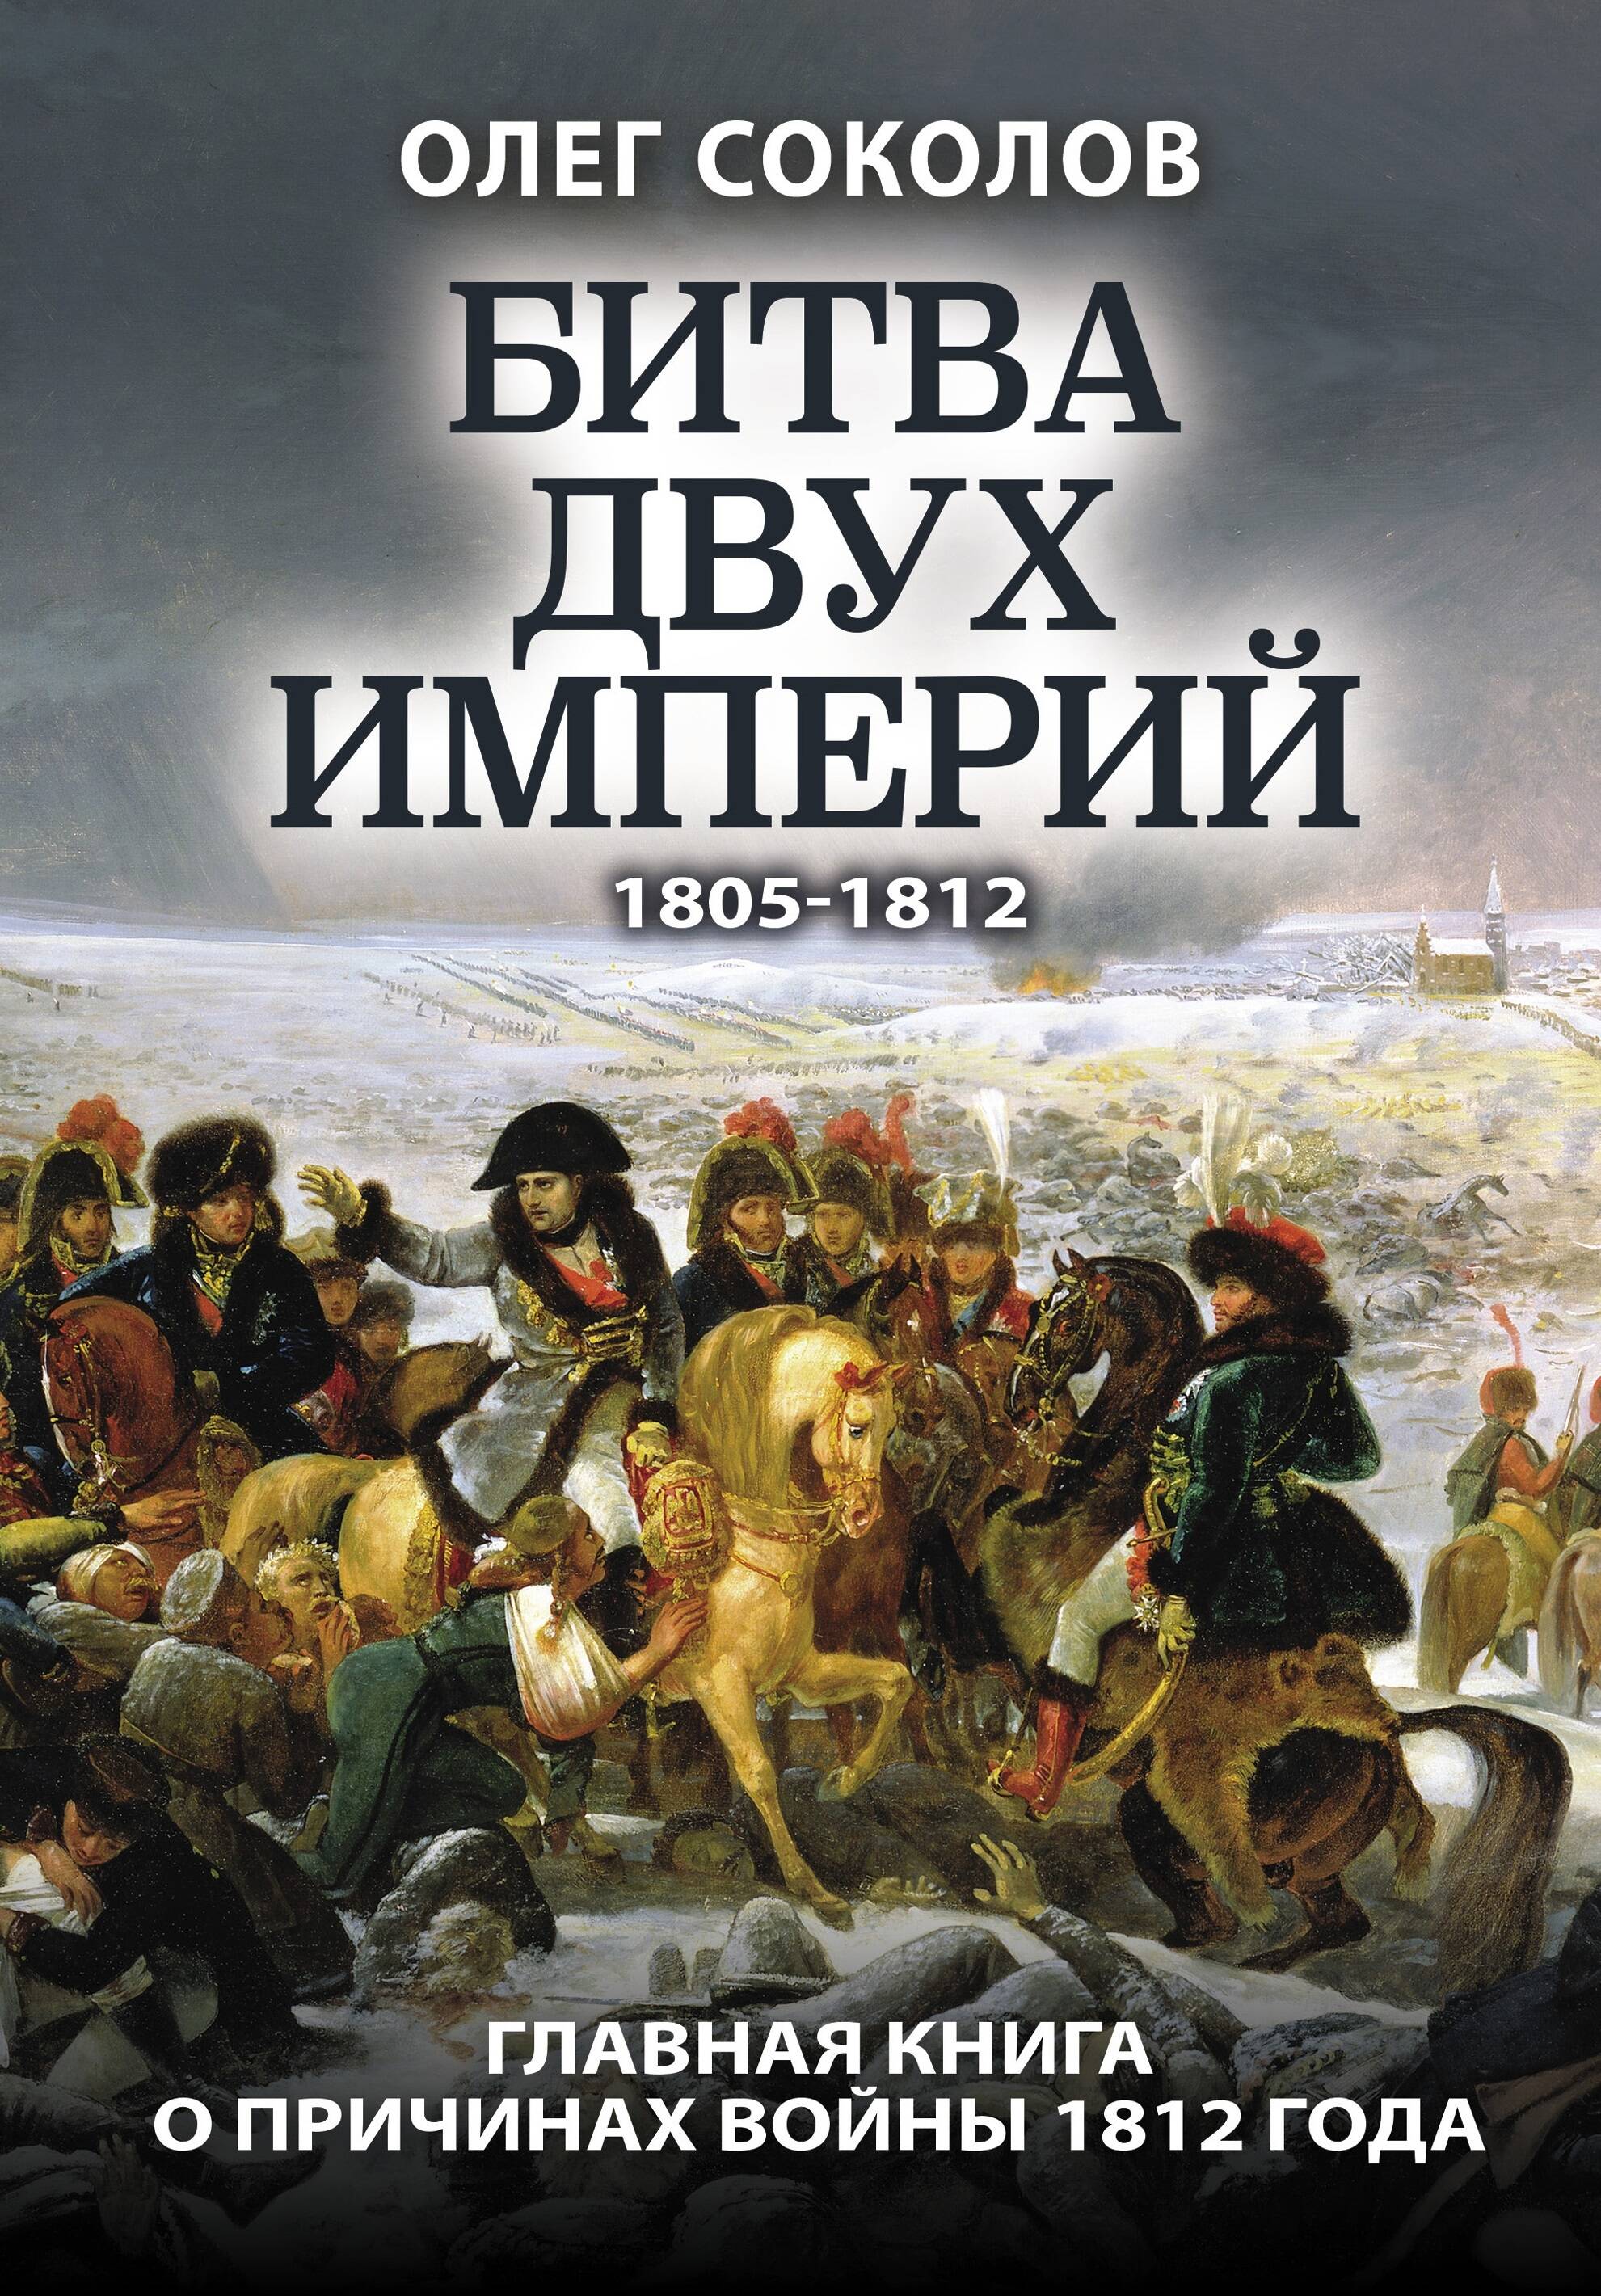 Соколов Олег Валерьевич - Битва двух империй 1805-1812. Главная книга о причинах войны 1812 года